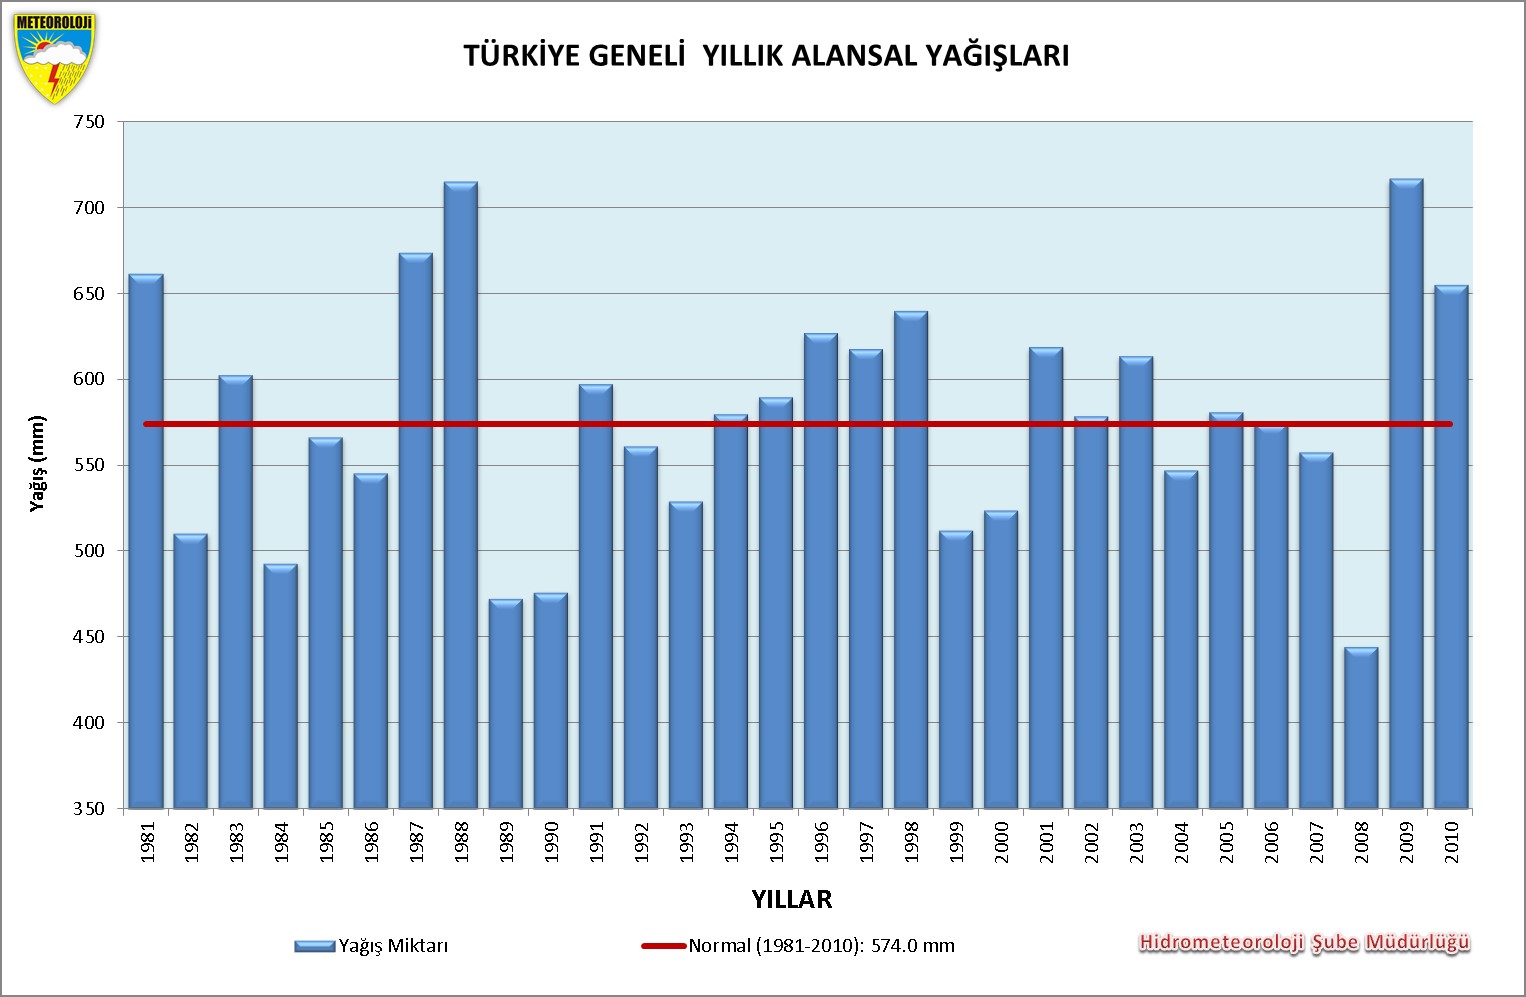 Şekil 7. (1981-2010) Türkiye Yıllık Alansal Yağışları